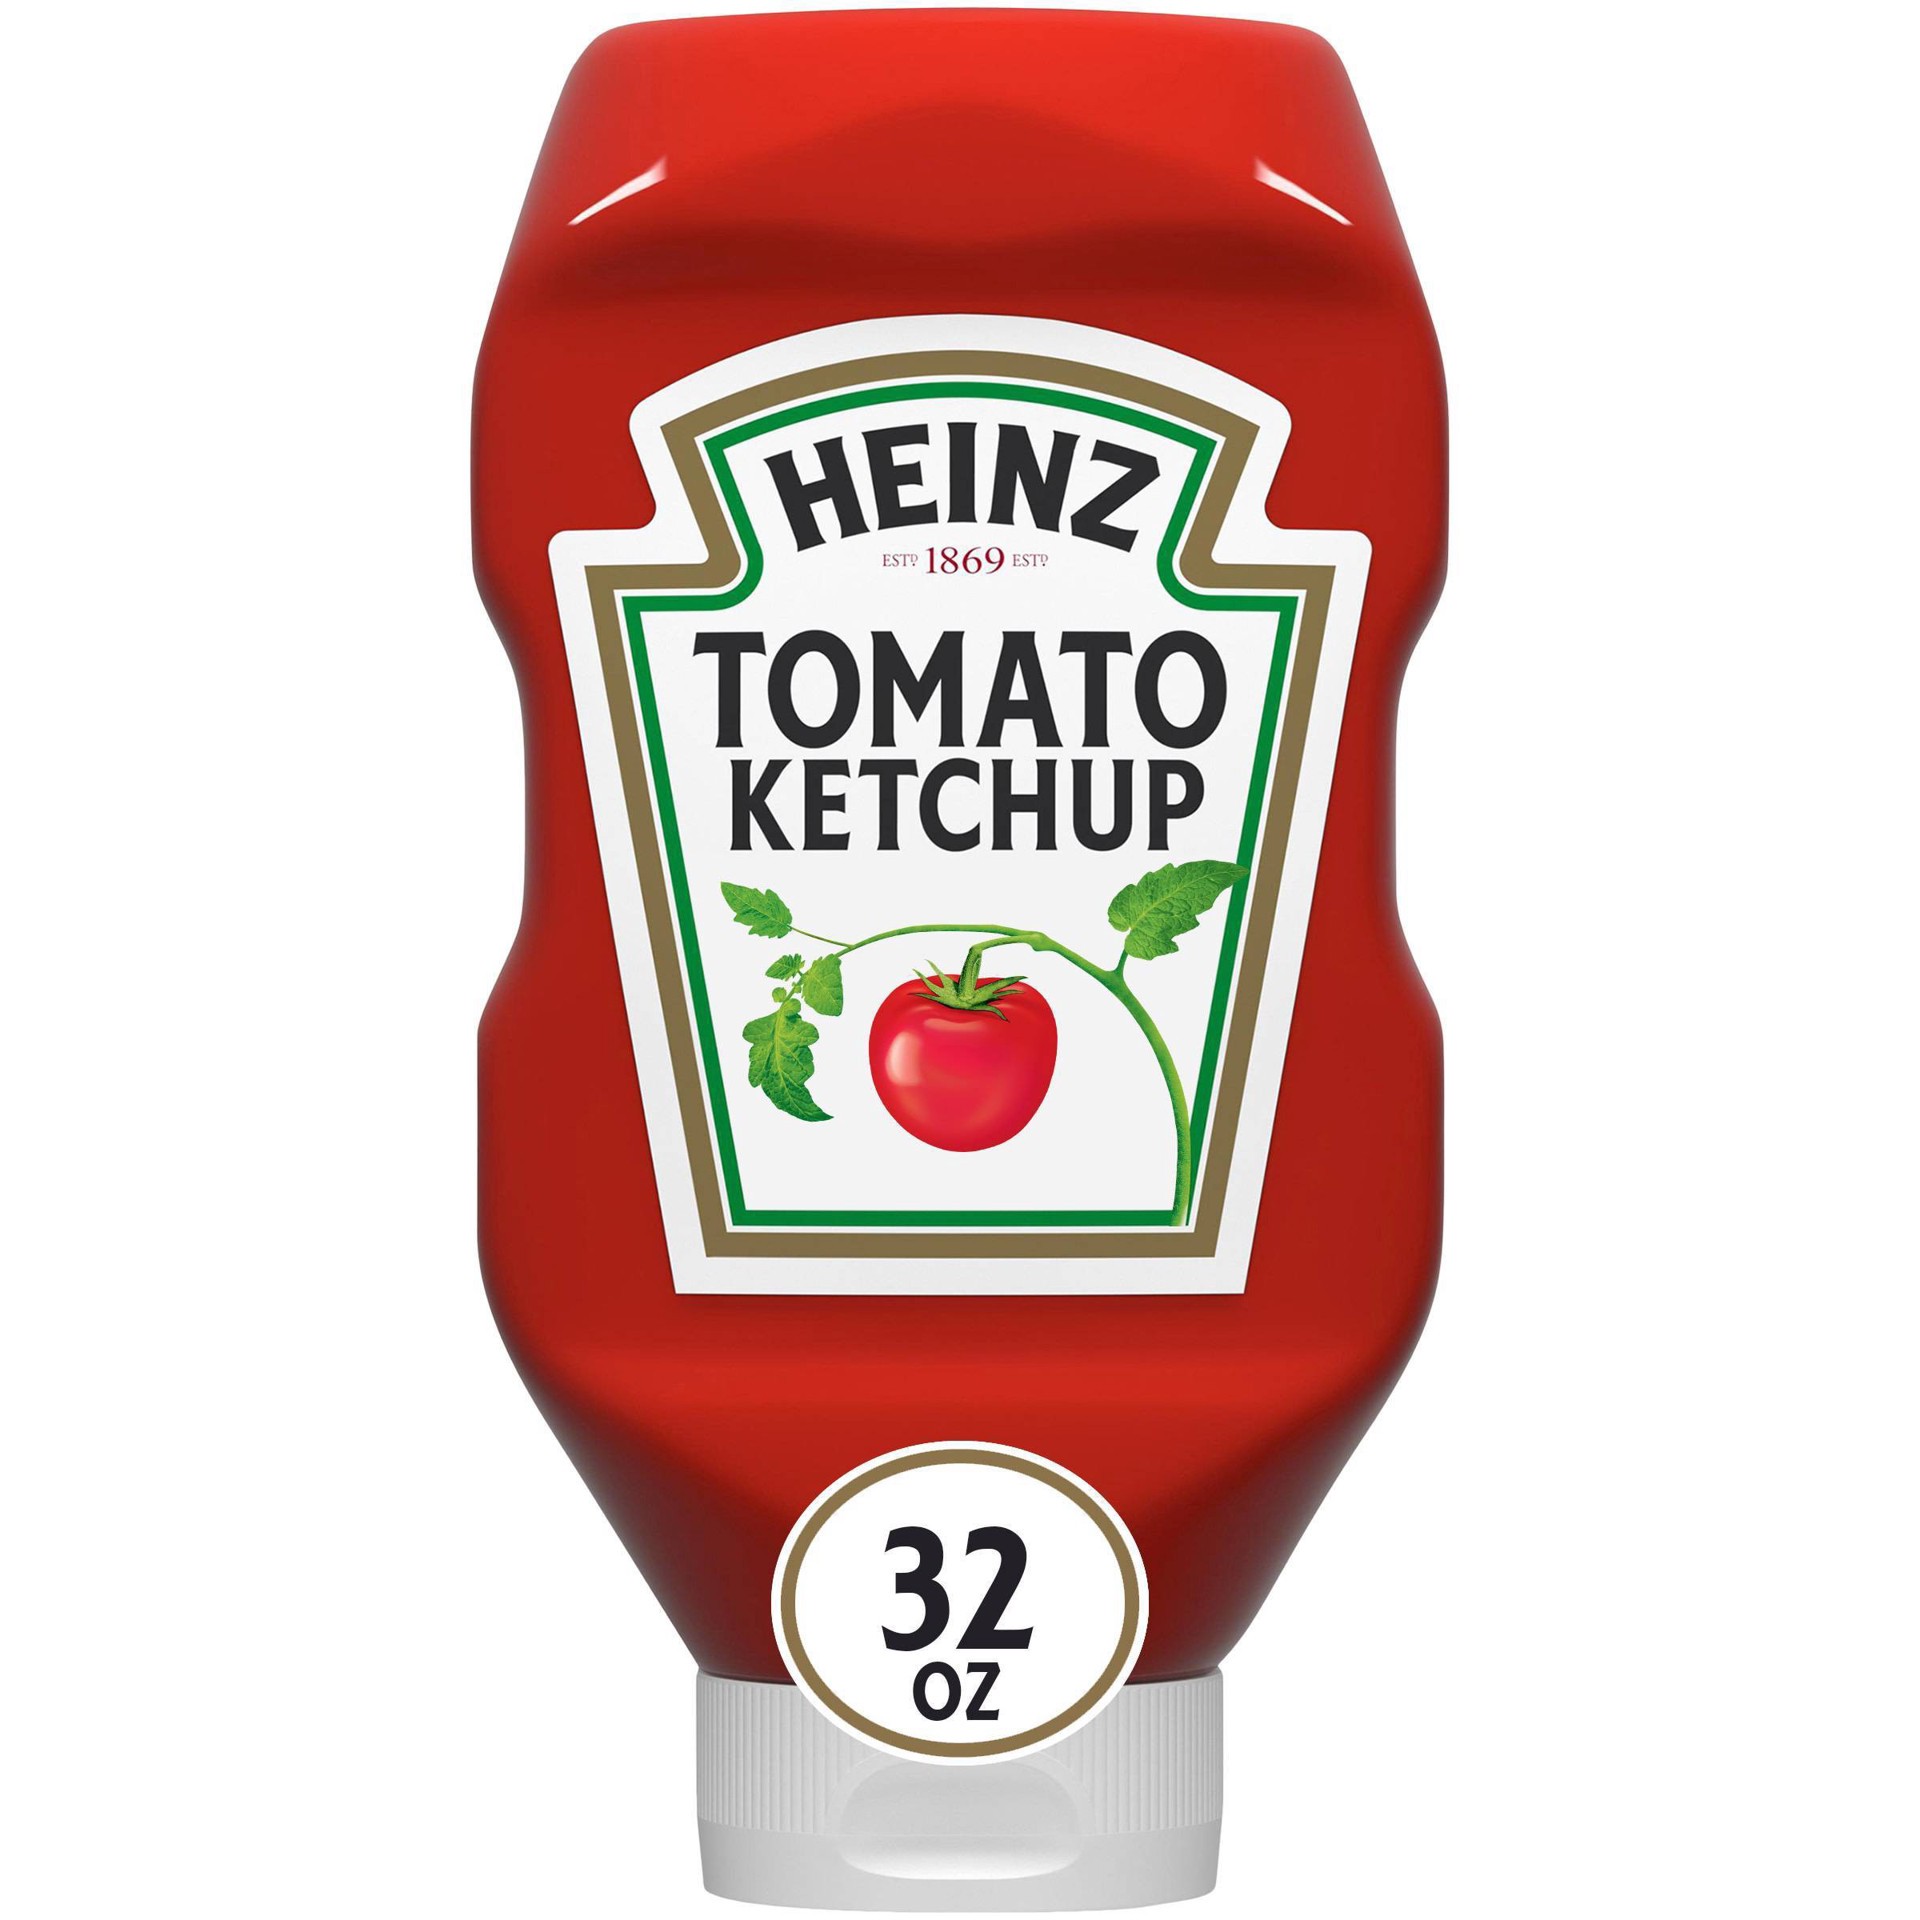 slide 1 of 86, Heinz Tomato Ketchup Bottle, 32 oz